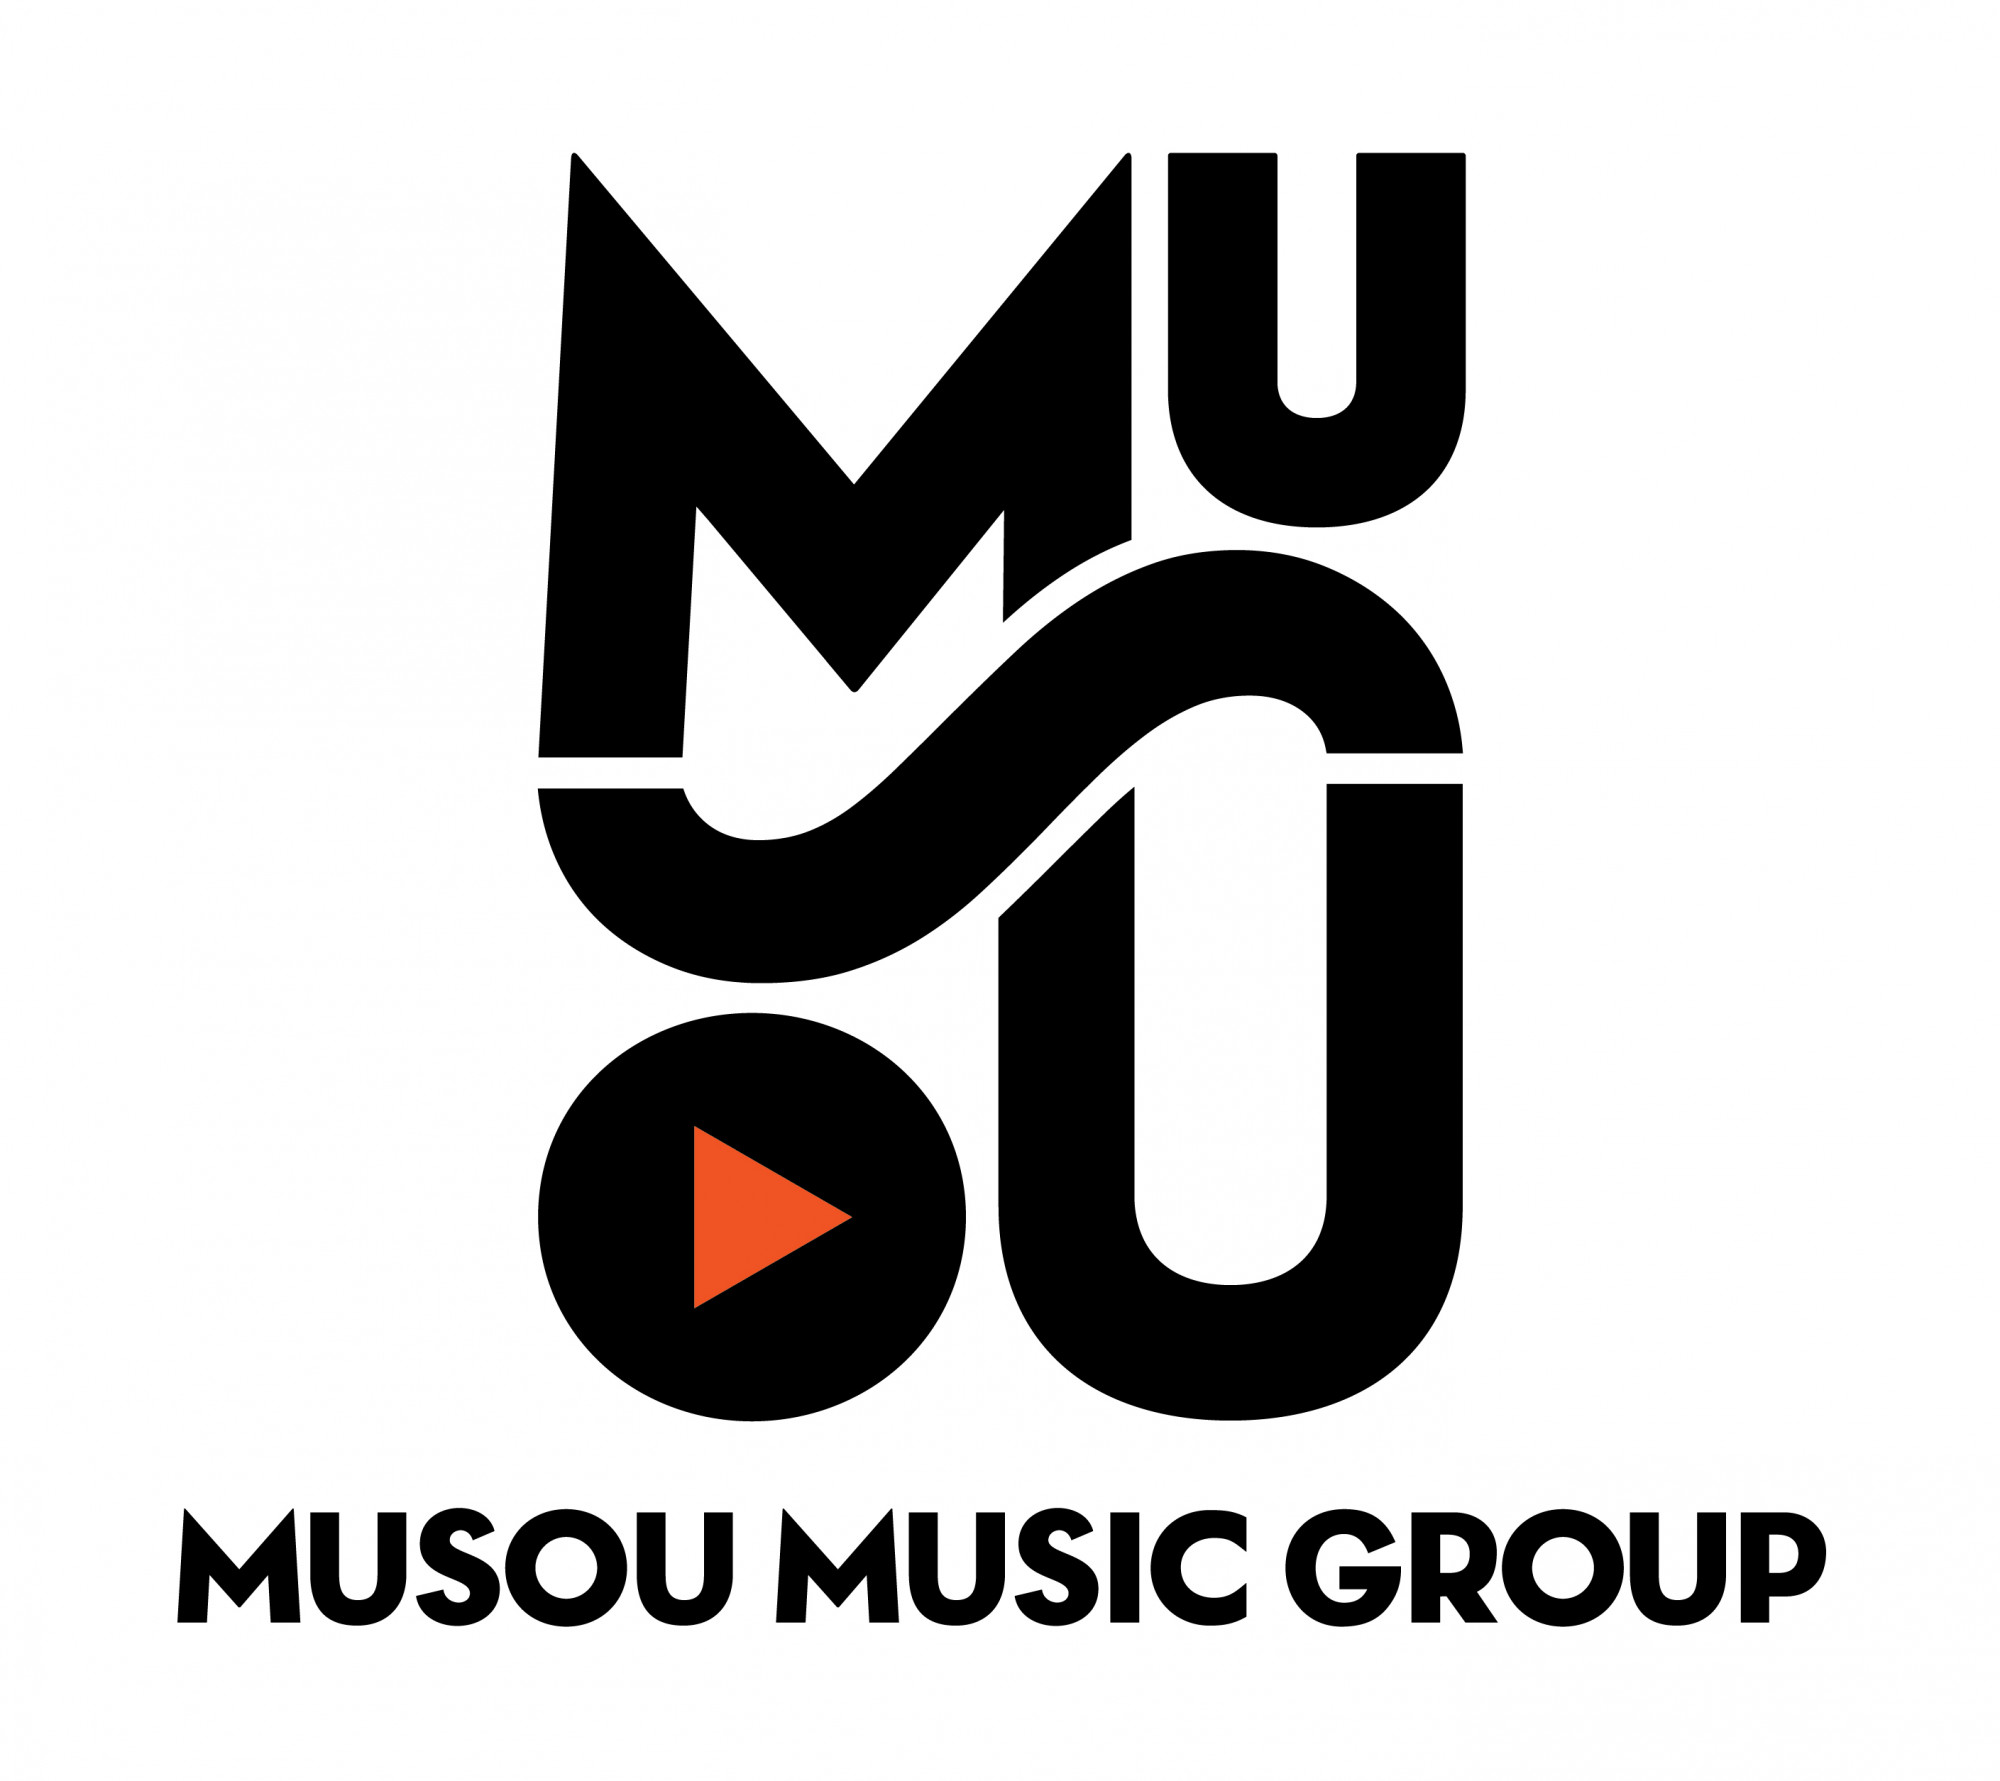 Musou Music Group